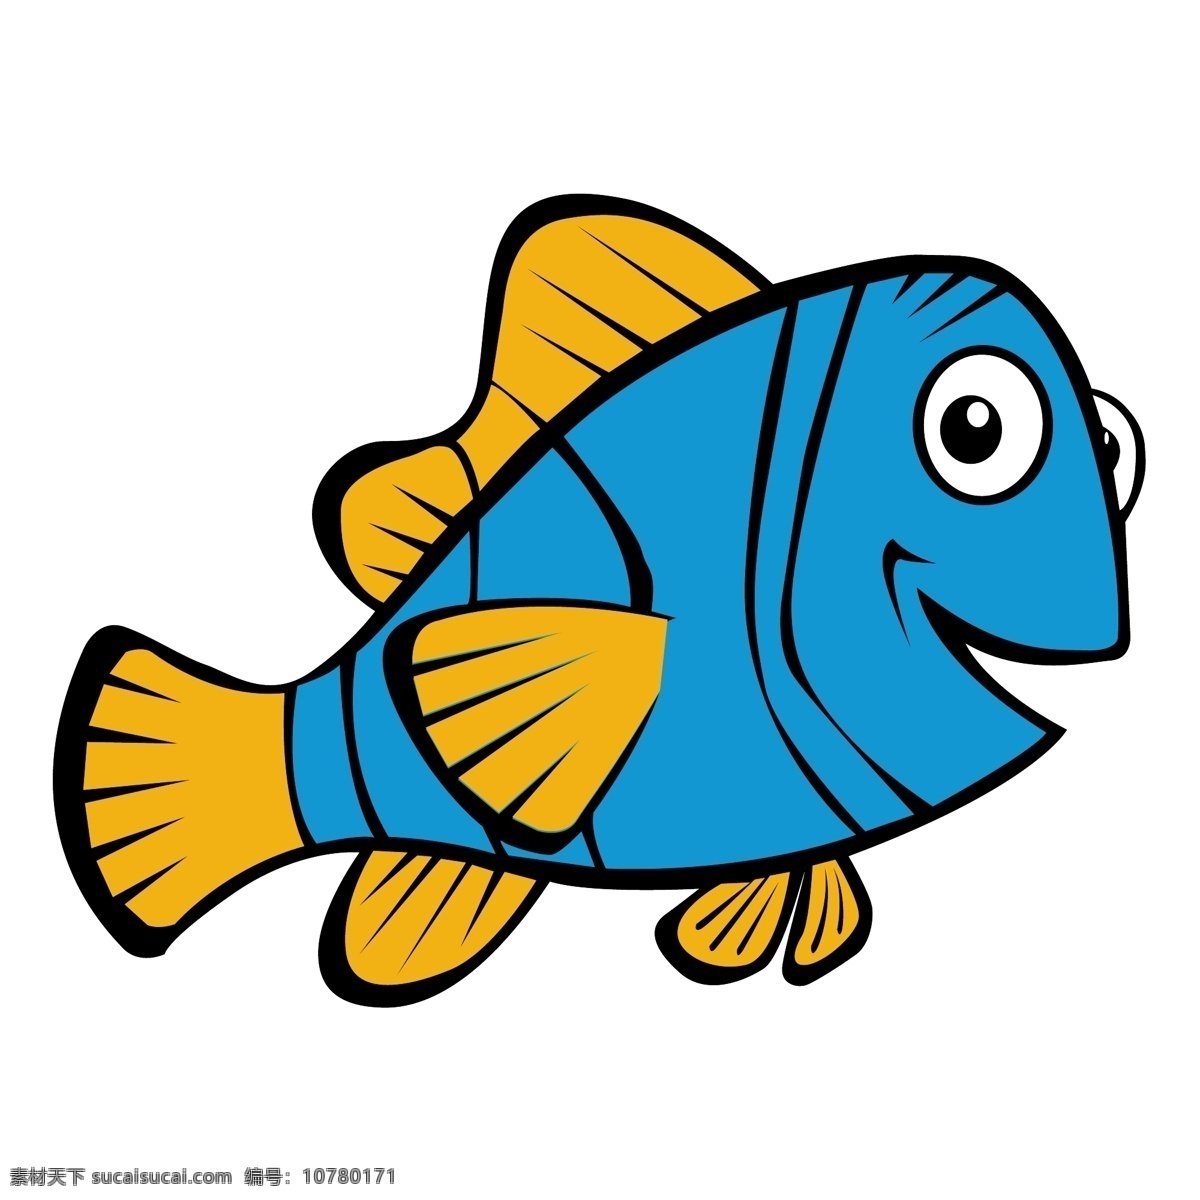 海底 生物 魚 生物世界 矢量图库 鱼类 底生物魚 類